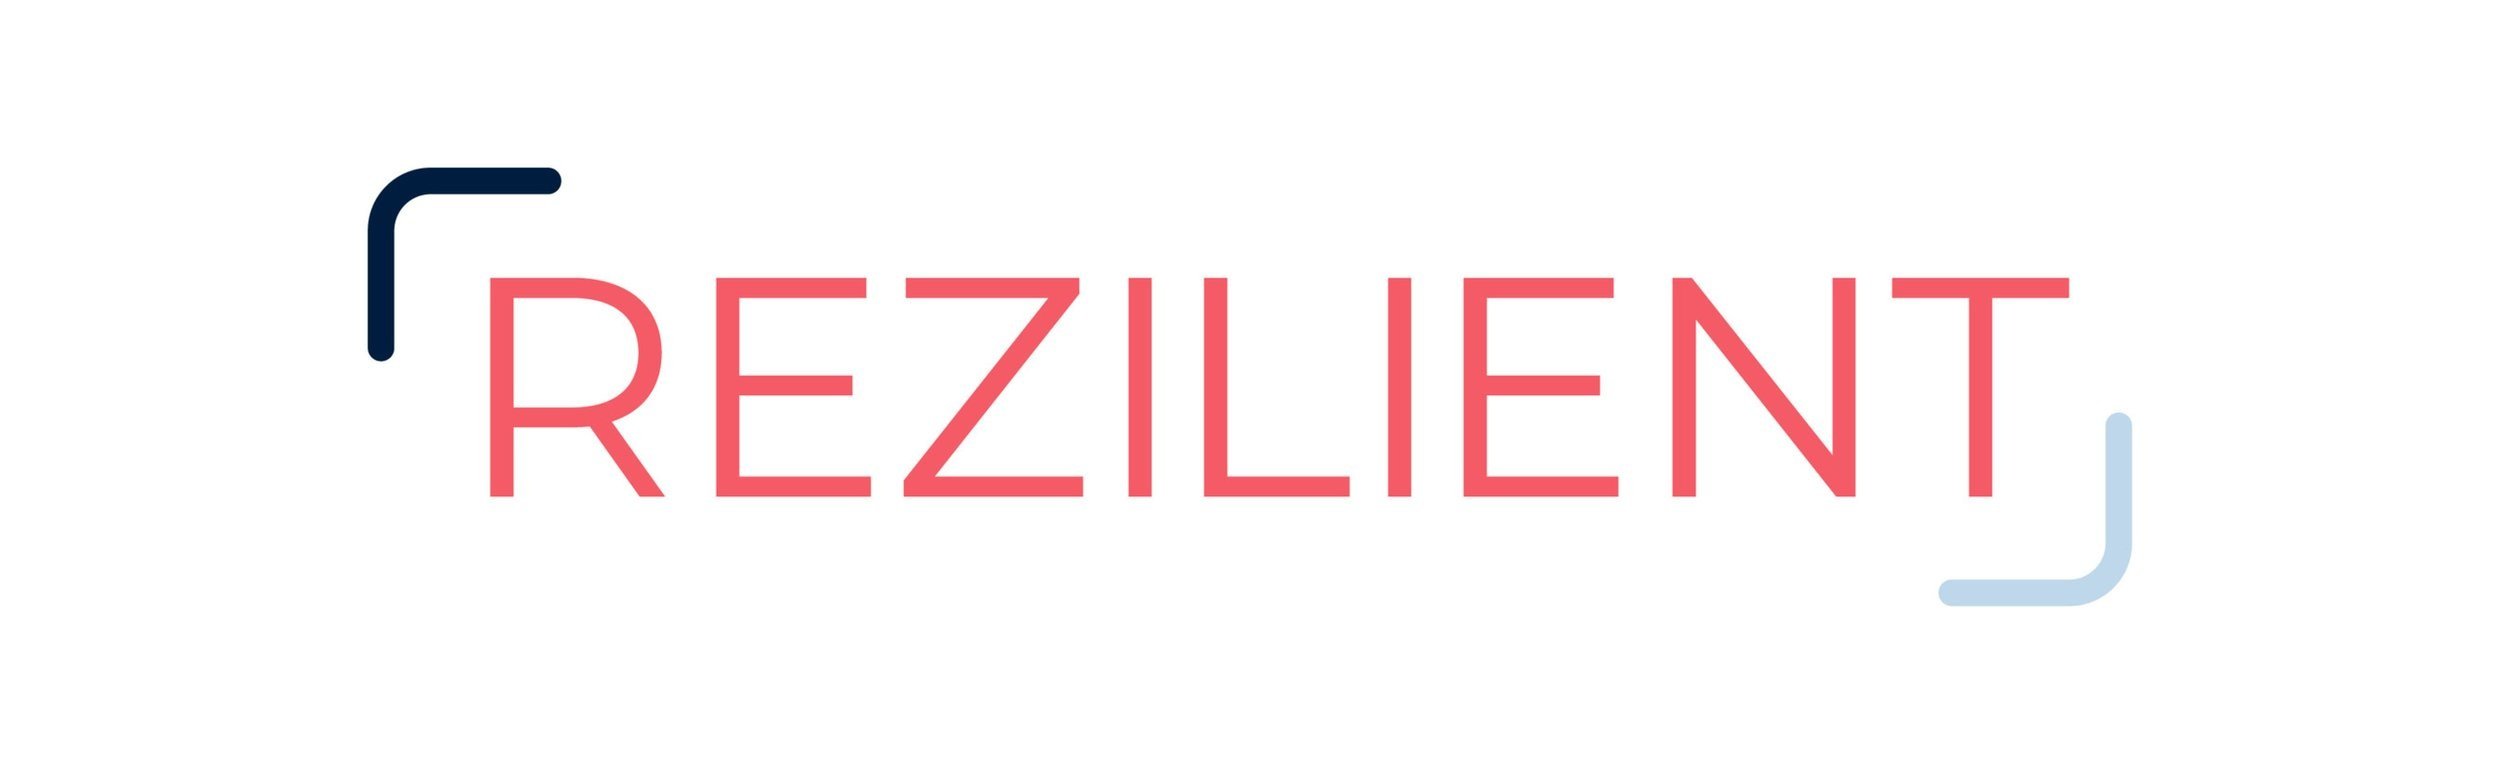 Rezilient_Logo.jpg